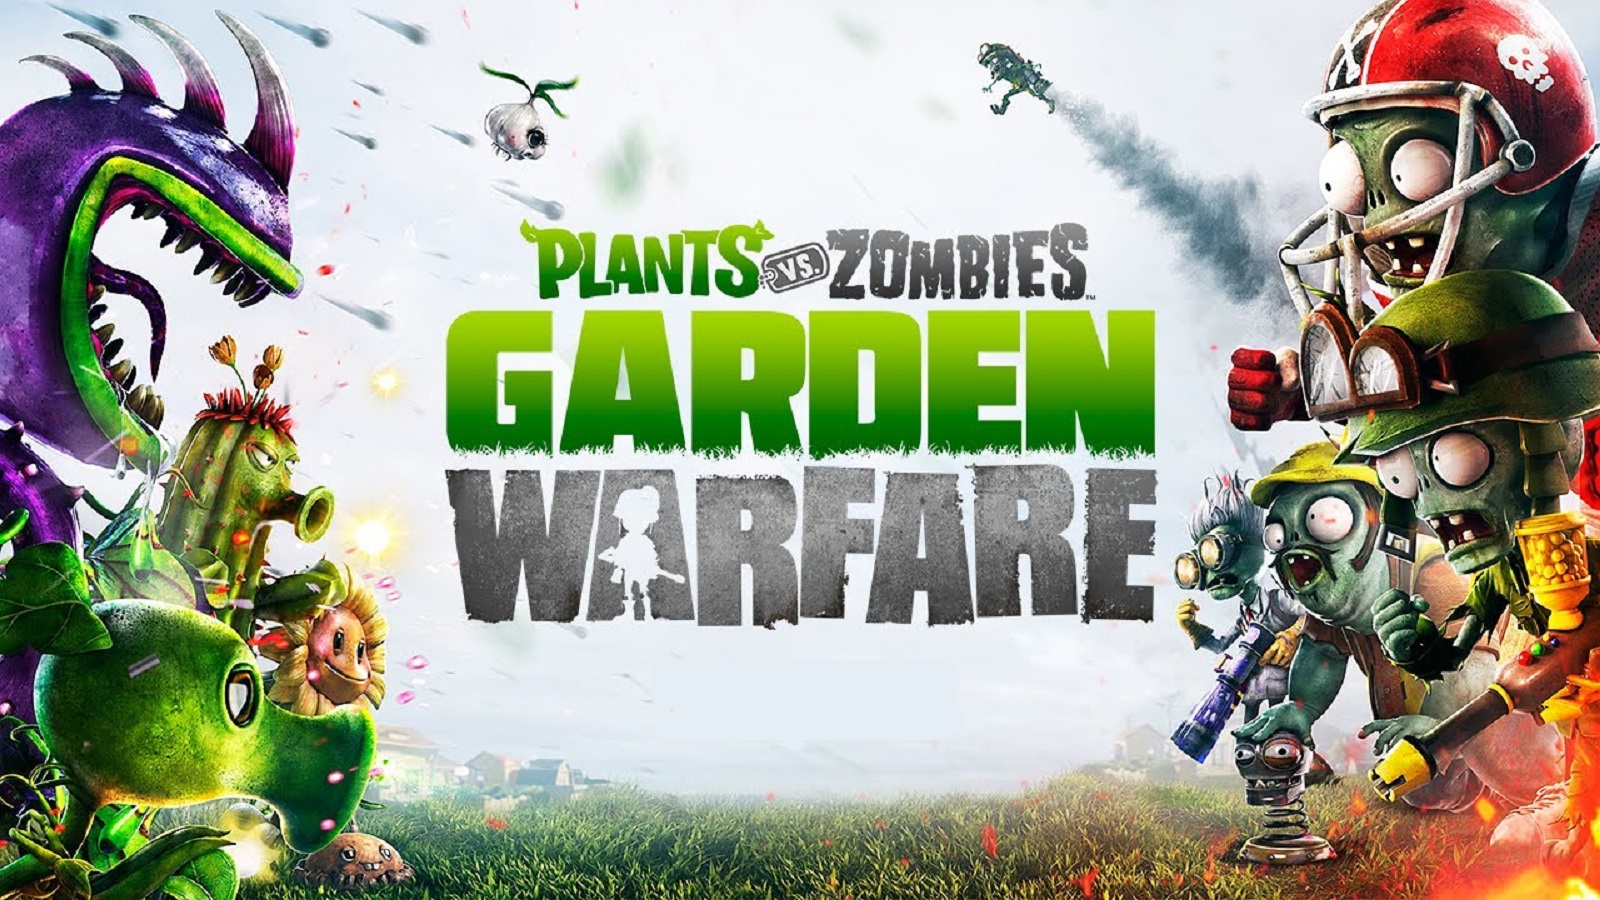 Plants vs. Zombies : Garden Warfare Wallpapers